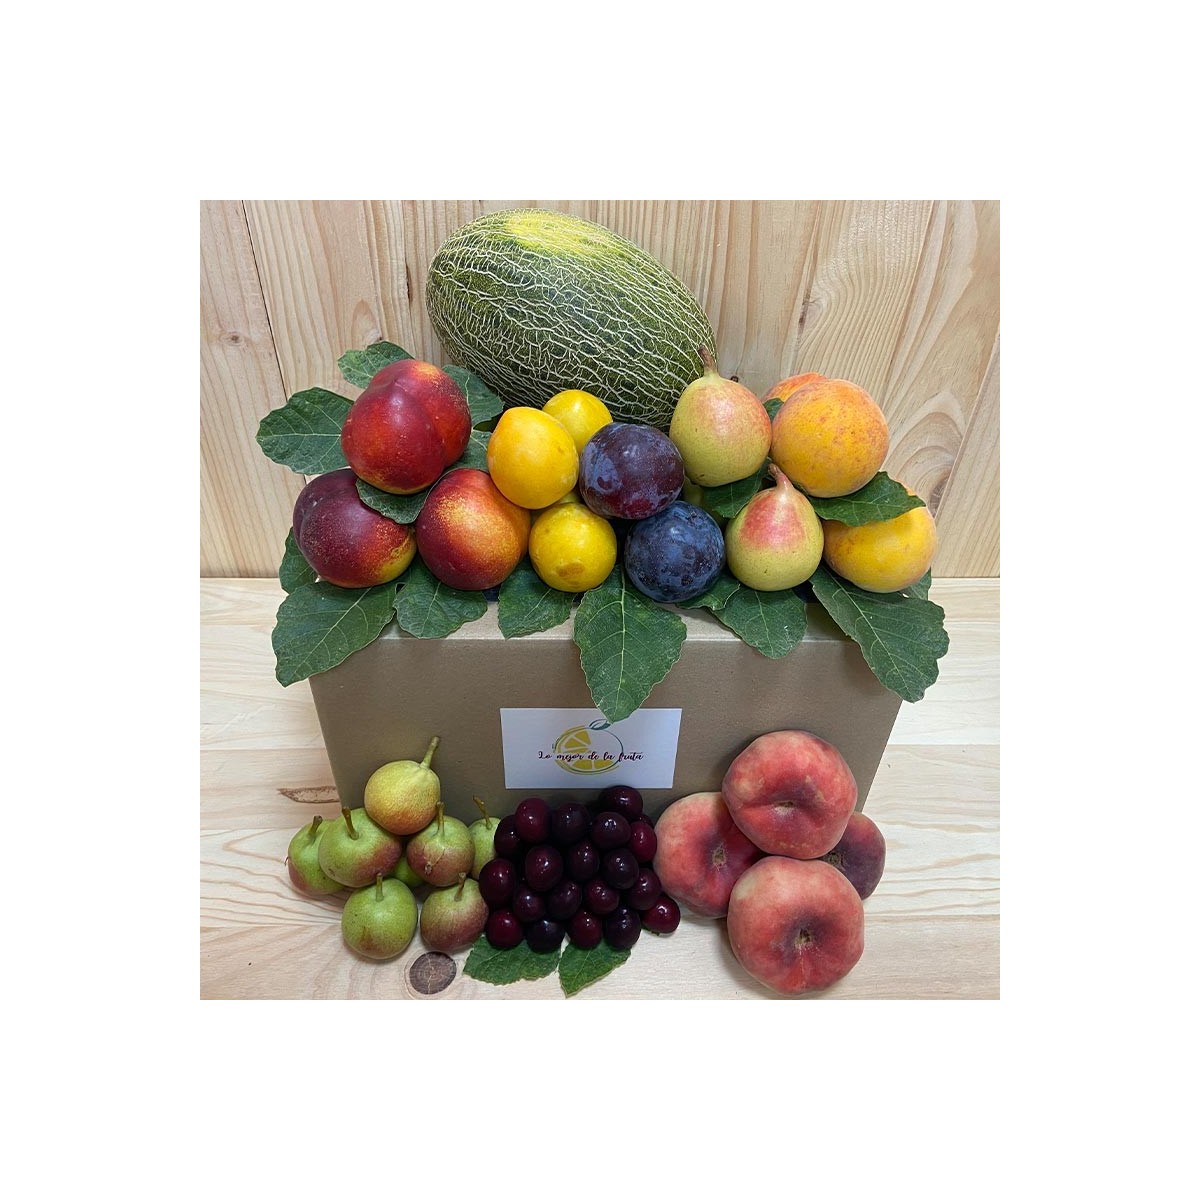 Pack agosto - Packs Frutas y Verduras -1- Lo mejor de la fruta